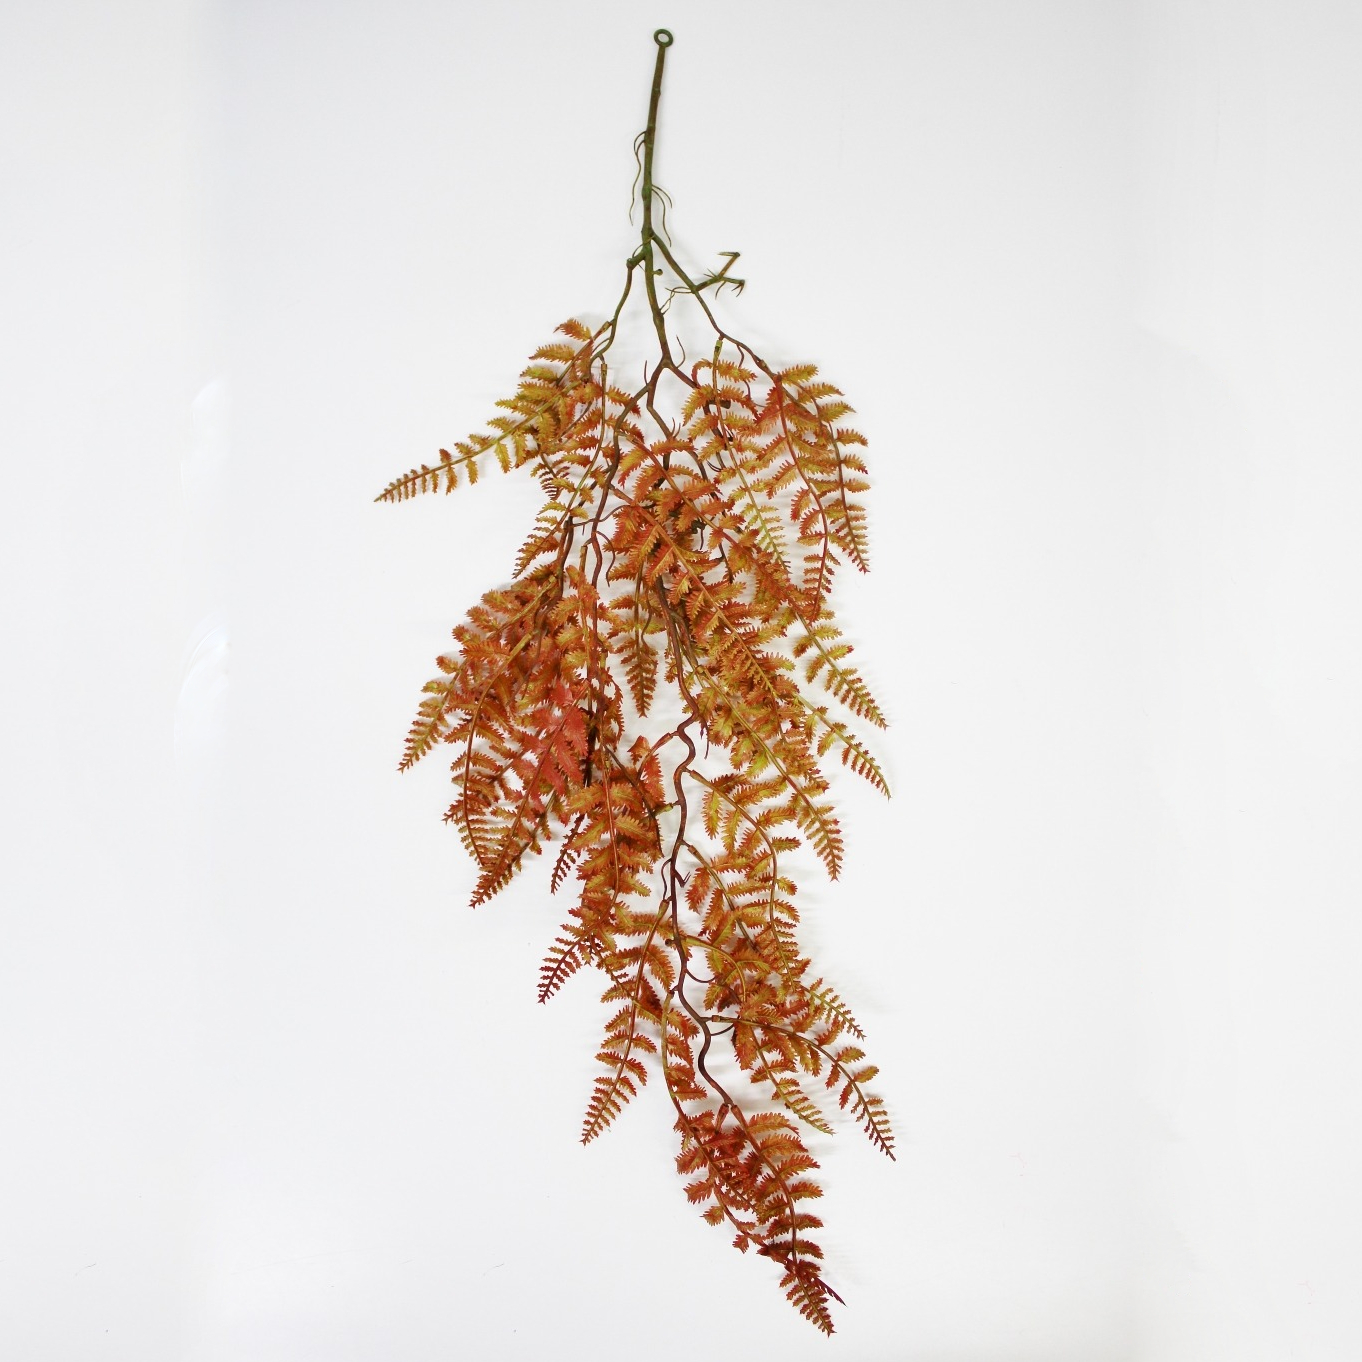 Даваллия Конэко-О ампельная 5551094, 90 см растение искусственное конэко о церопегия ампельная высота 90 см